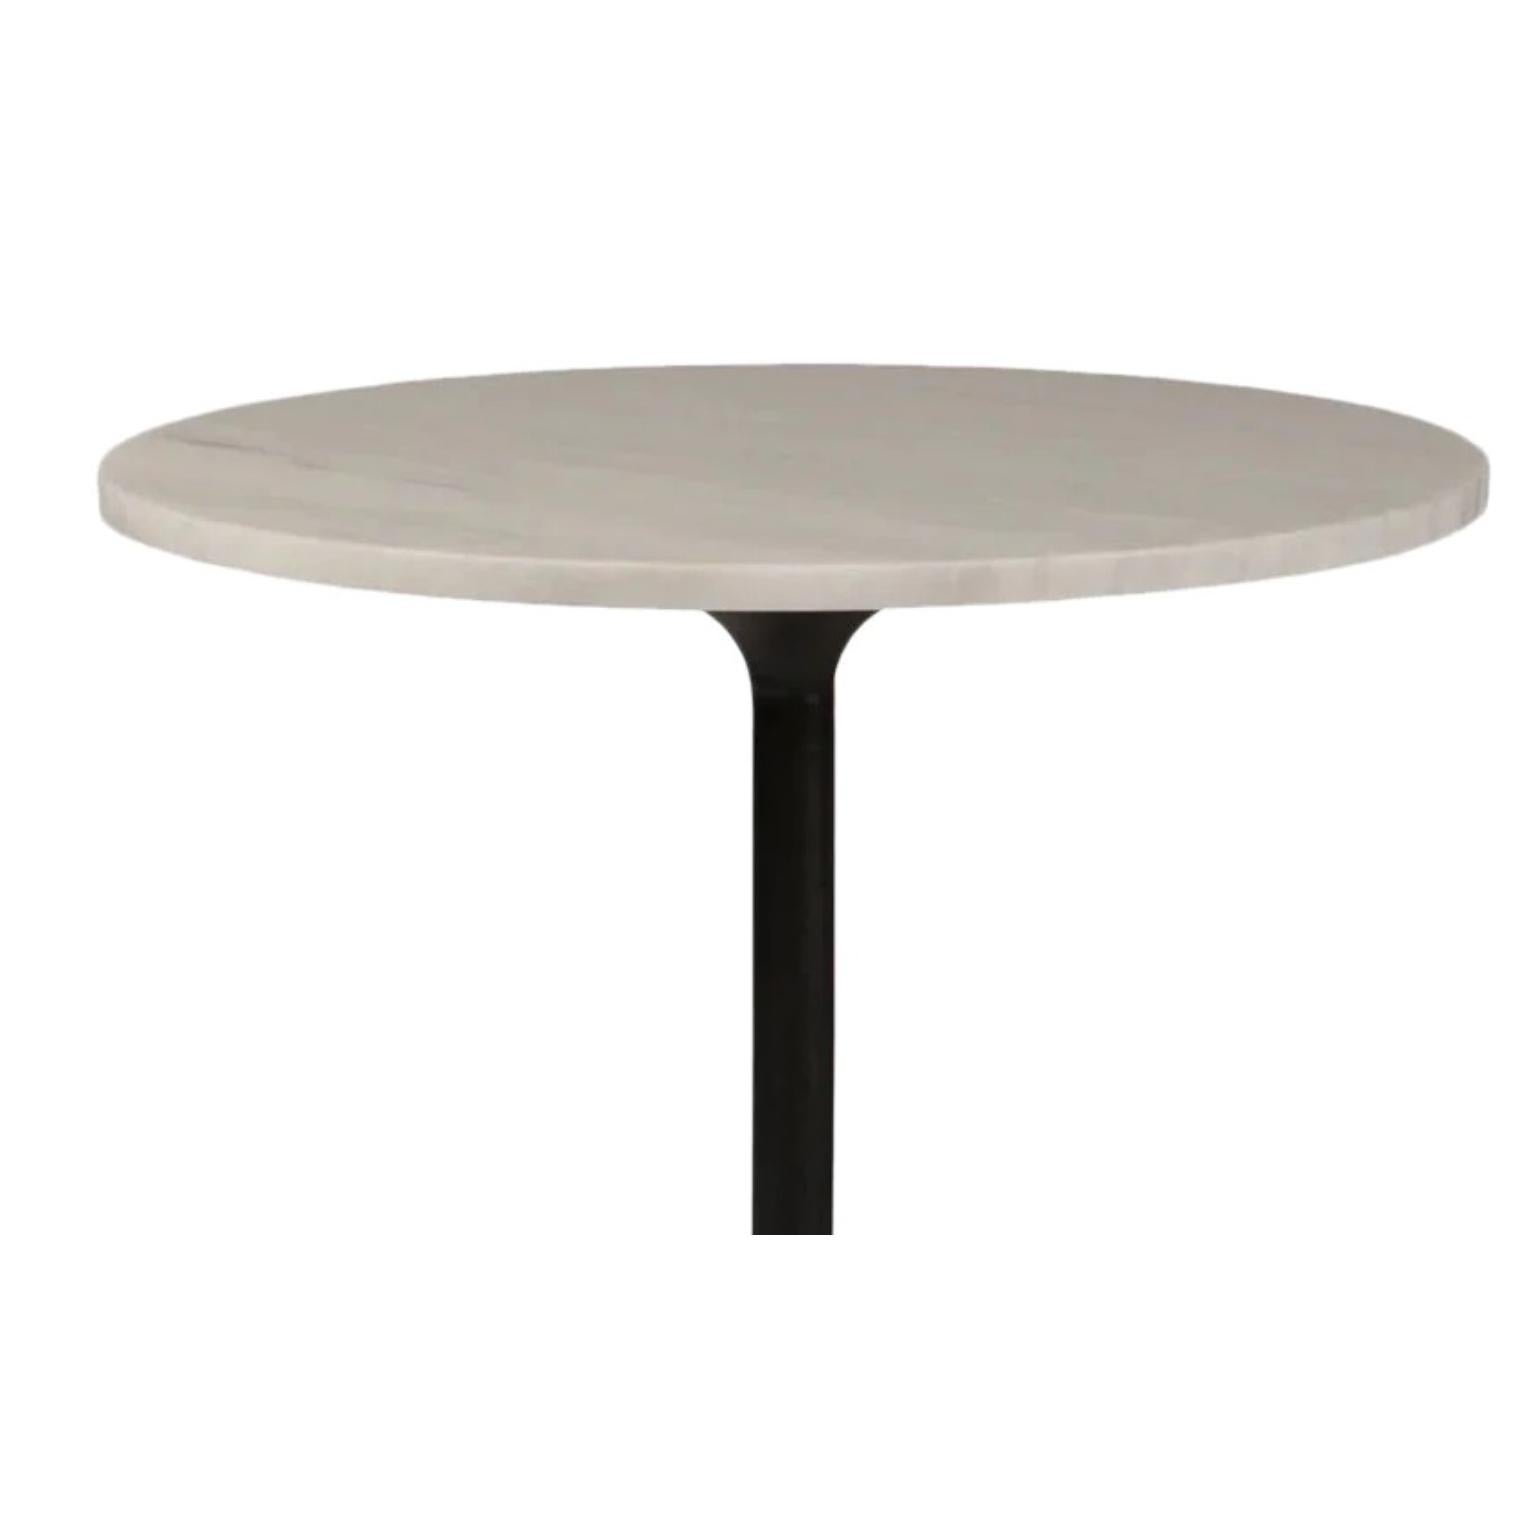 Maiden Café Tisch von NORR11
Abmessungen: Ø 65 x H 70 cm.
MATERIALIEN: Mattschwarzes Eisen und weißer Marmor.

Die Tischbeine sind nicht für den Außeneinsatz geeignet. Die Beine und die Tischplatte können separat verkauft werden. Bitte kontaktieren